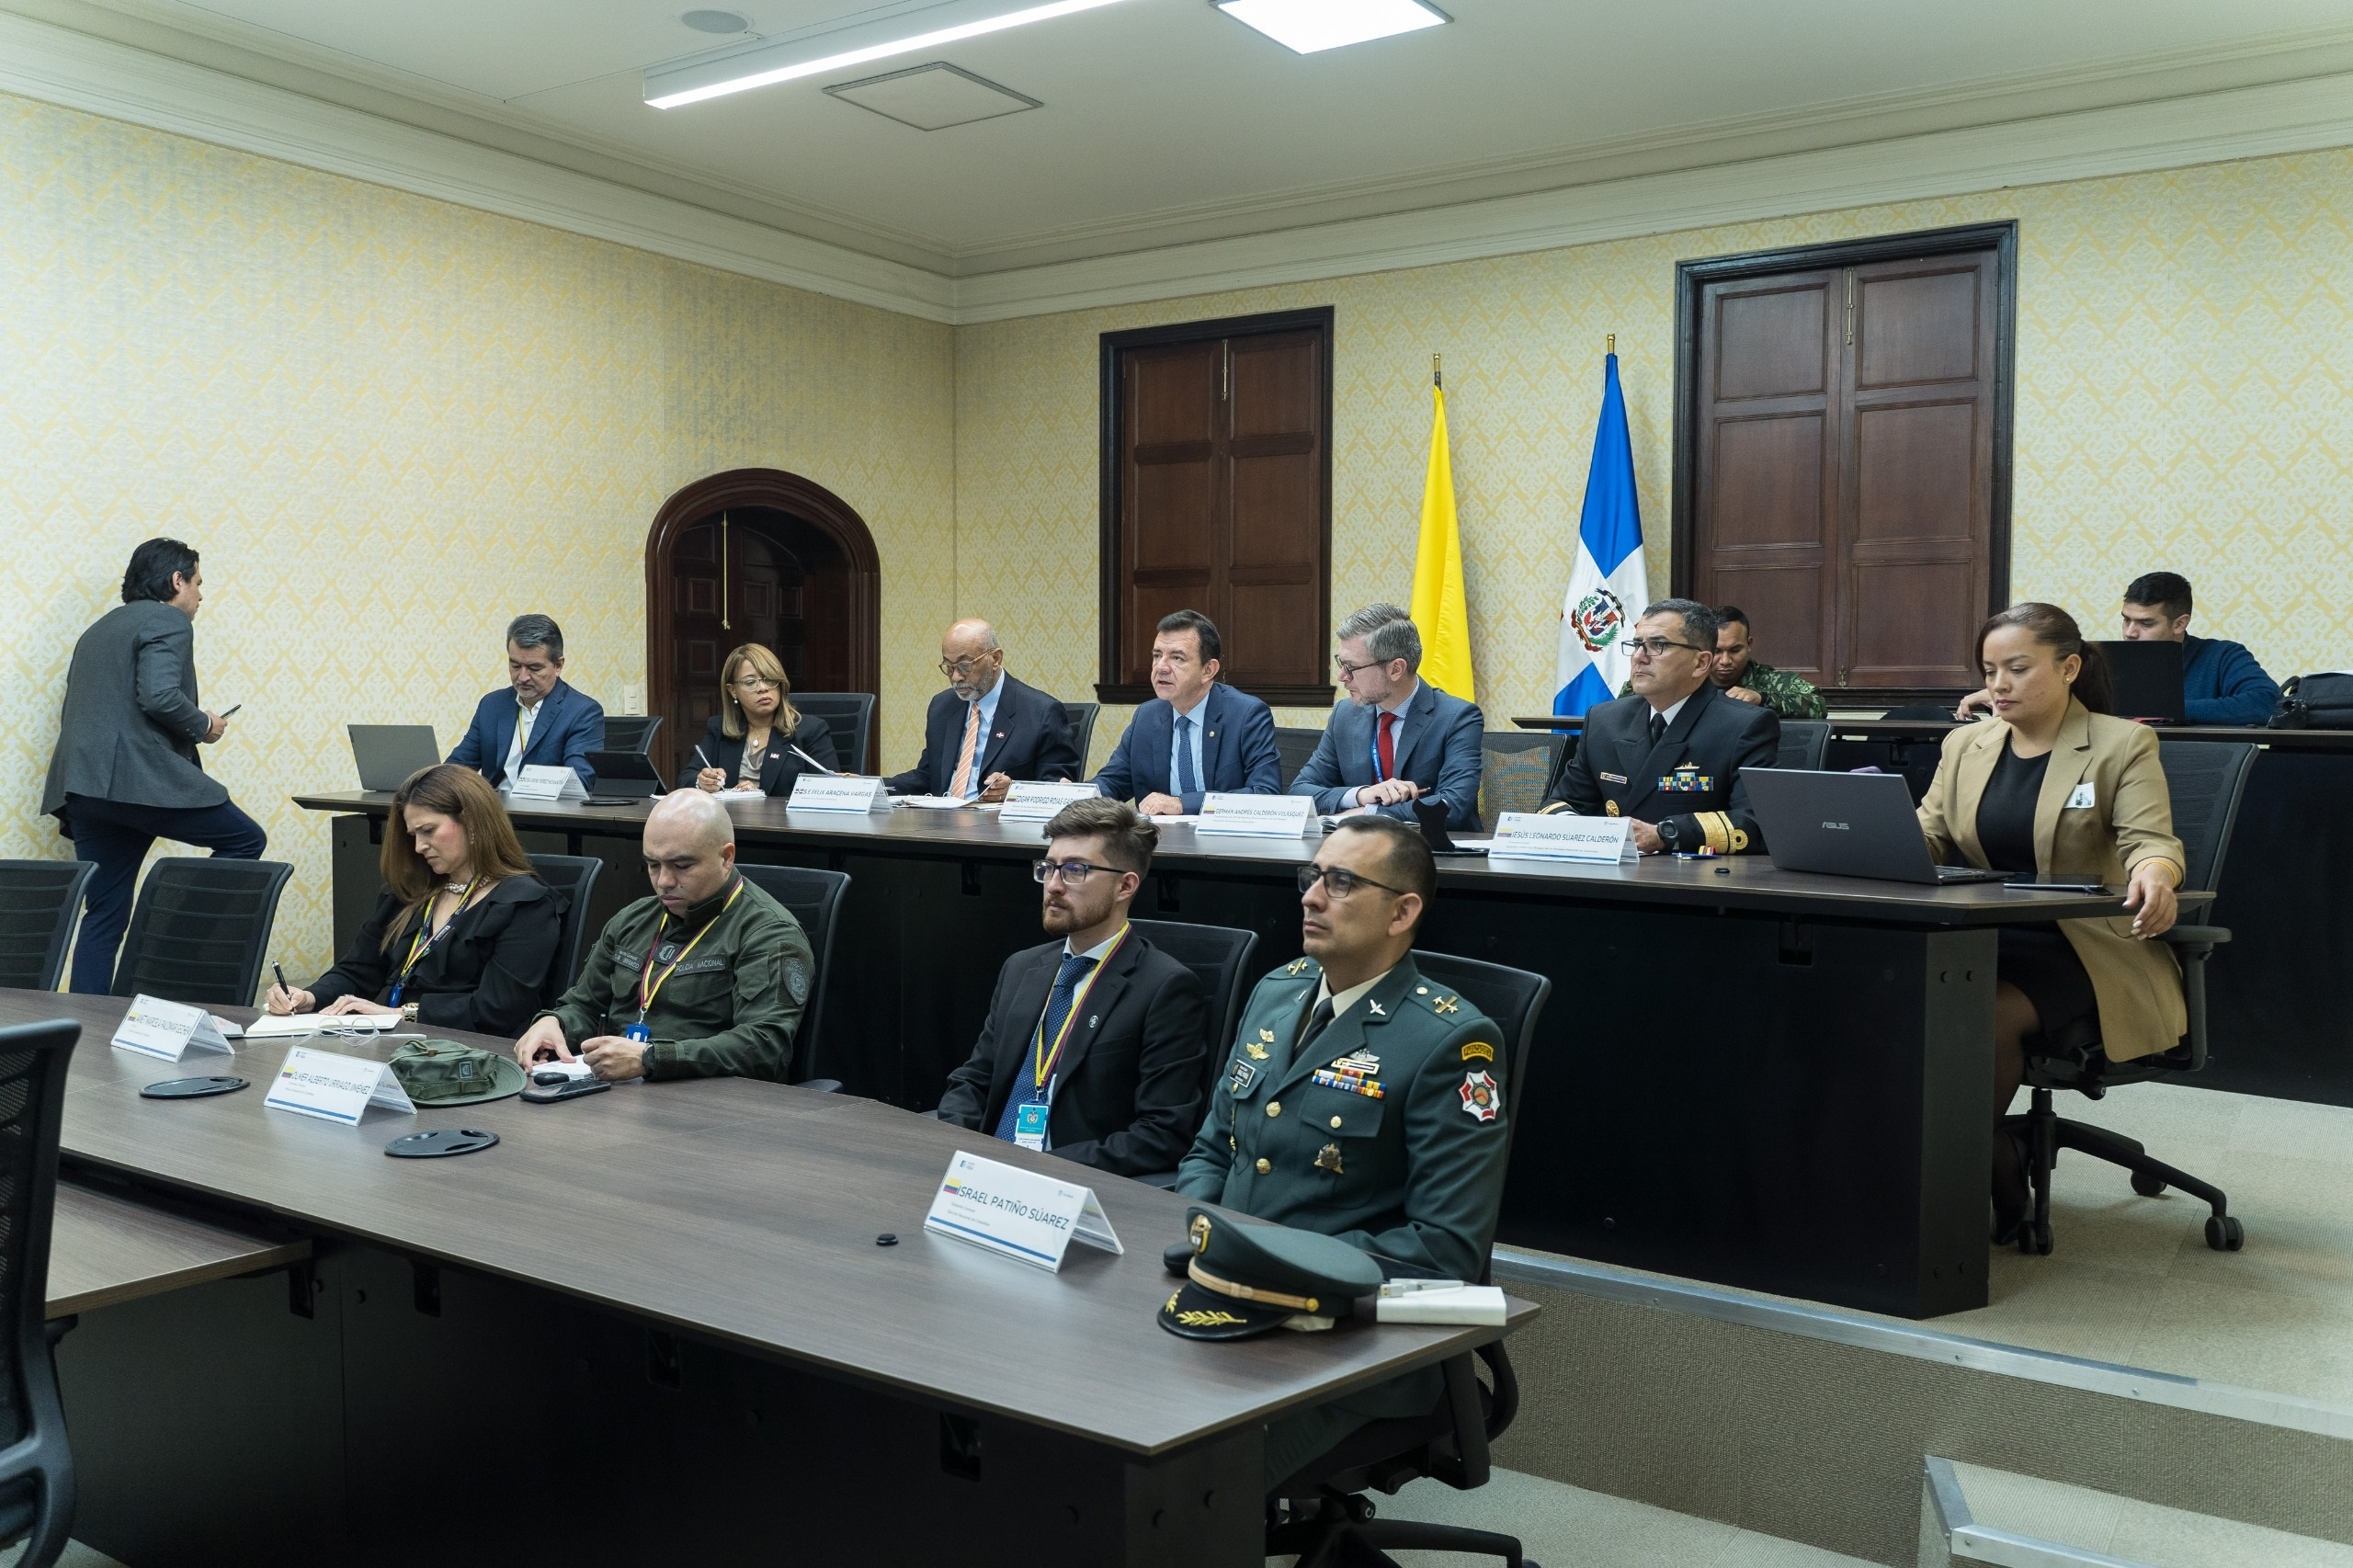 Colombia y República Dominicana celebran la II Reunión de la Comisión Mixta sobre Drogas